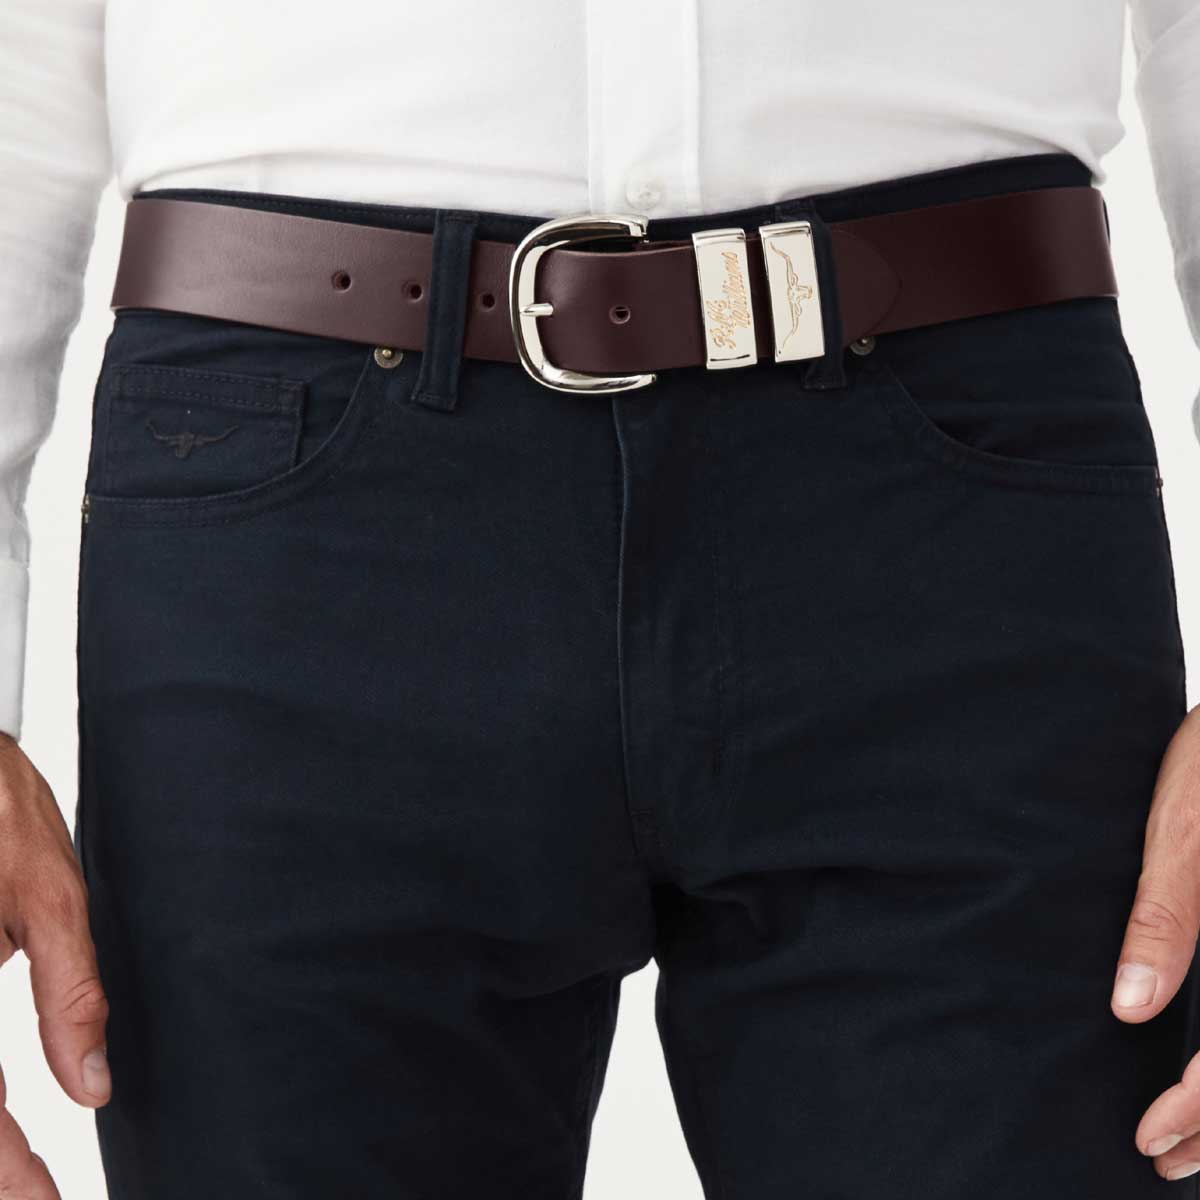 RM Williams - Jerrawa Leather Belt 1.5"